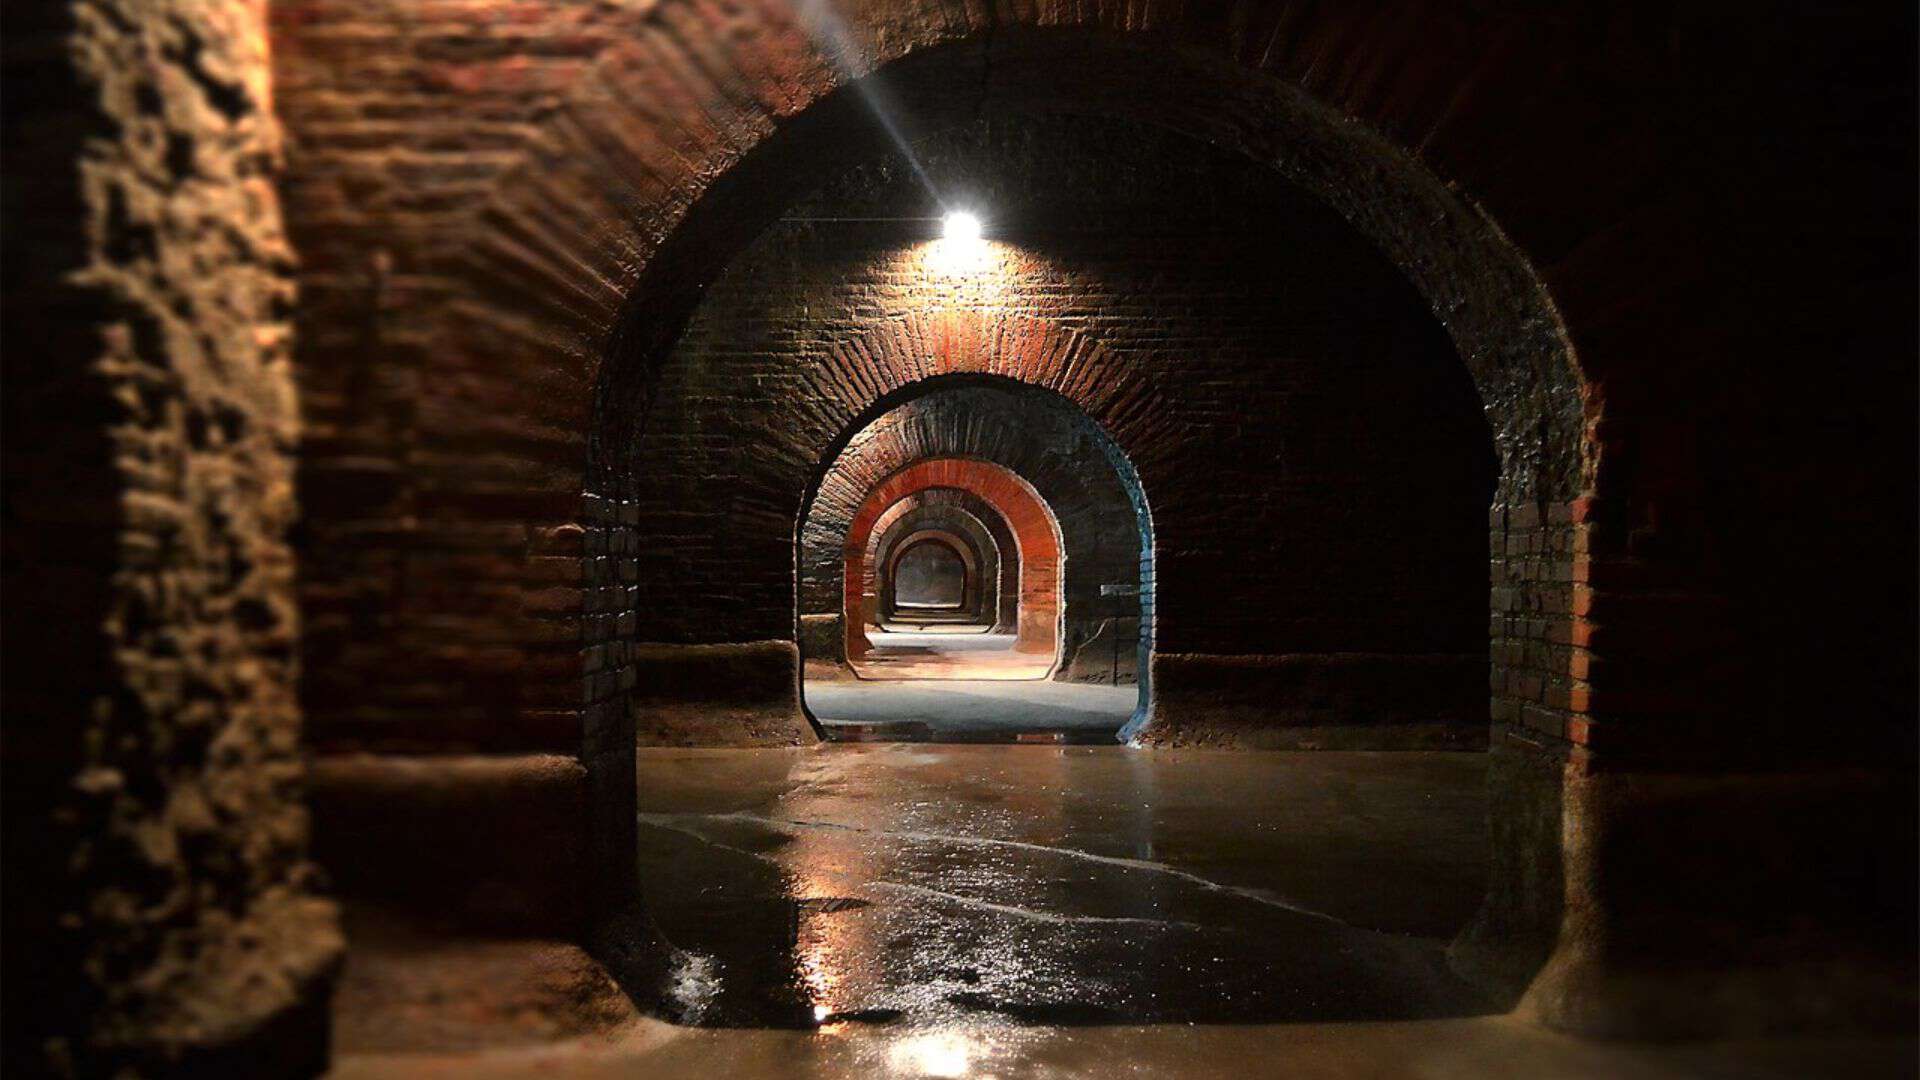 The roman cisterns of Fermo (image source: bellatrovata)